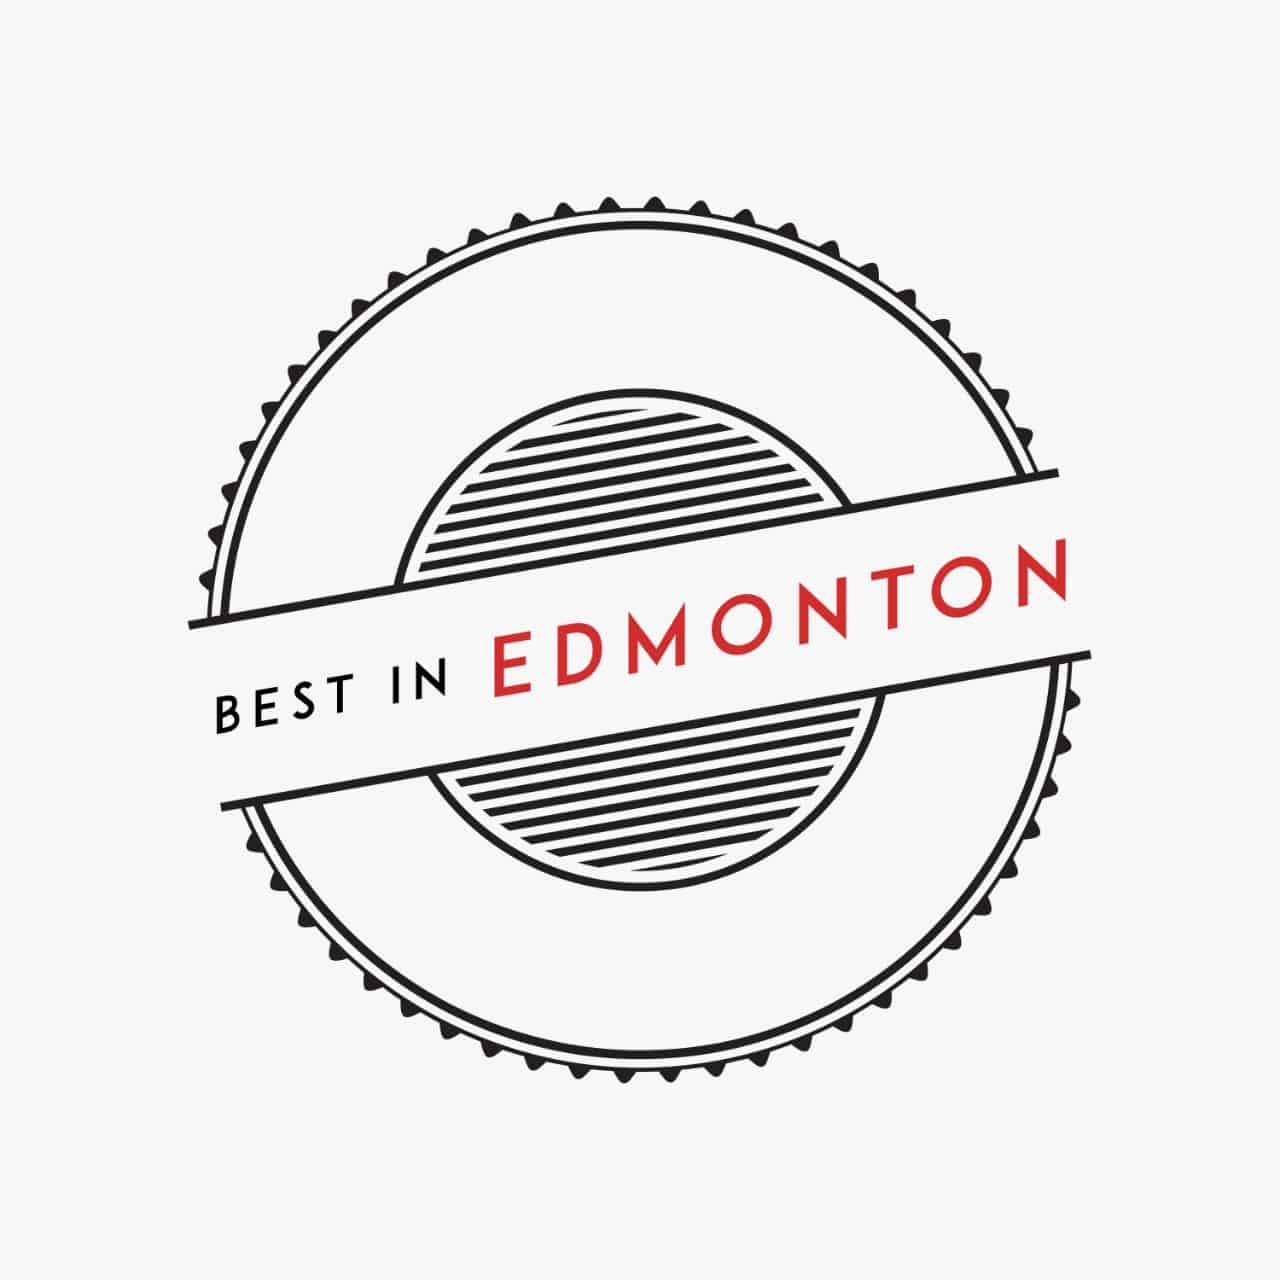 Best In Edmonton Badge